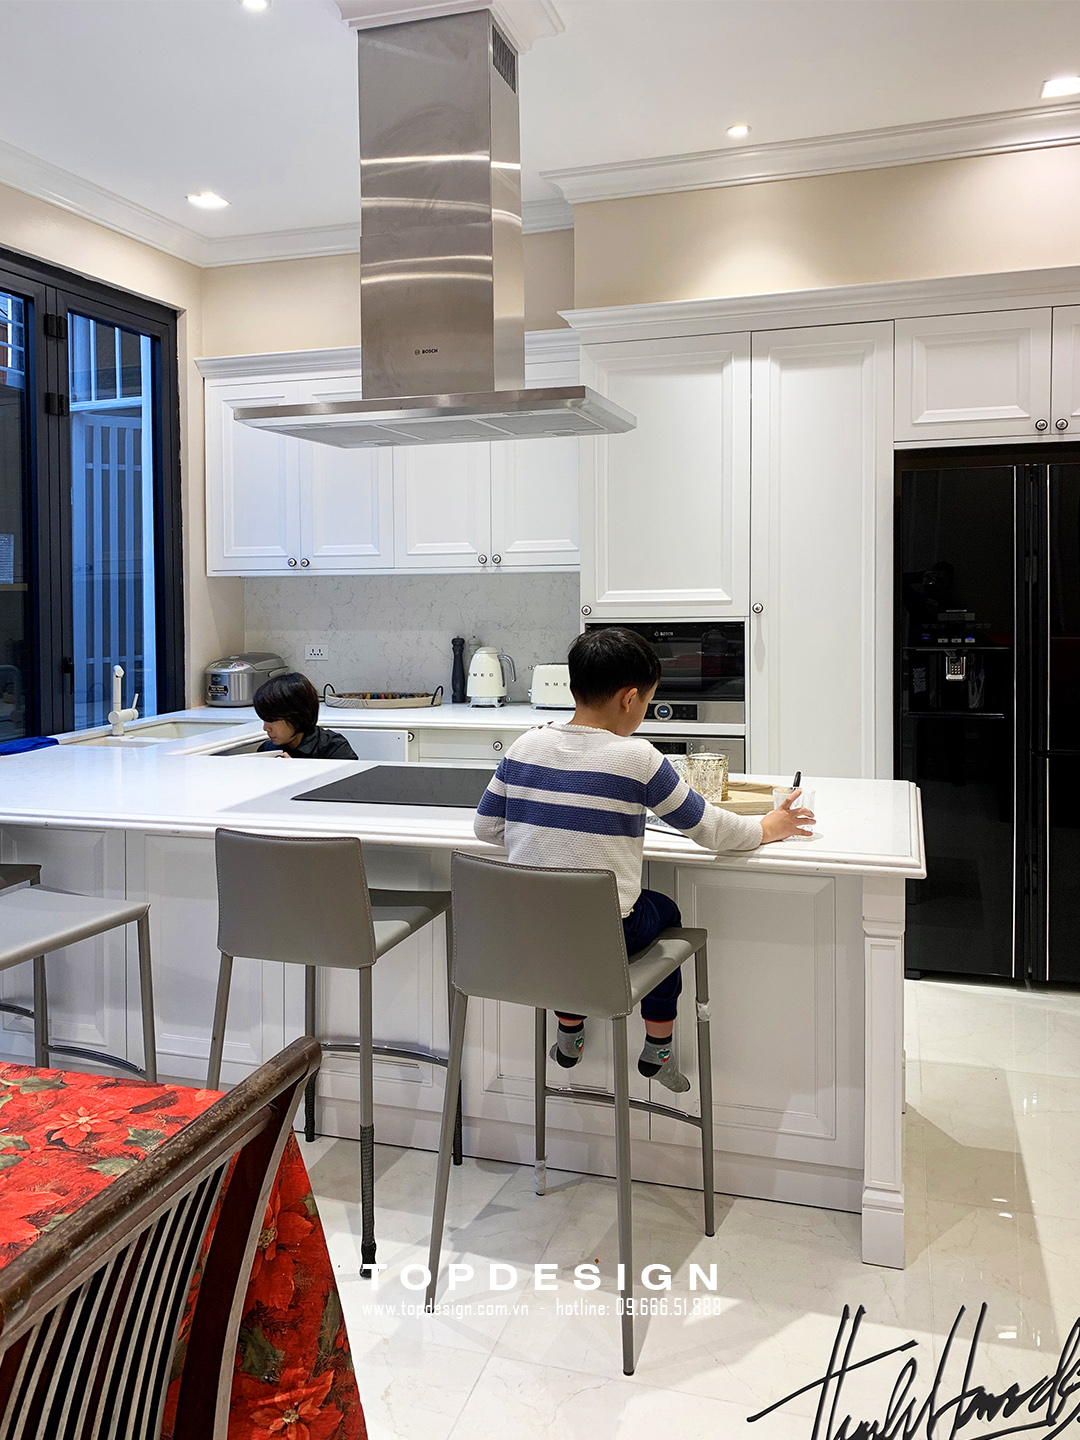 Thiết kế nội thất nhà ống cần lưu ý không gian phòng bếp